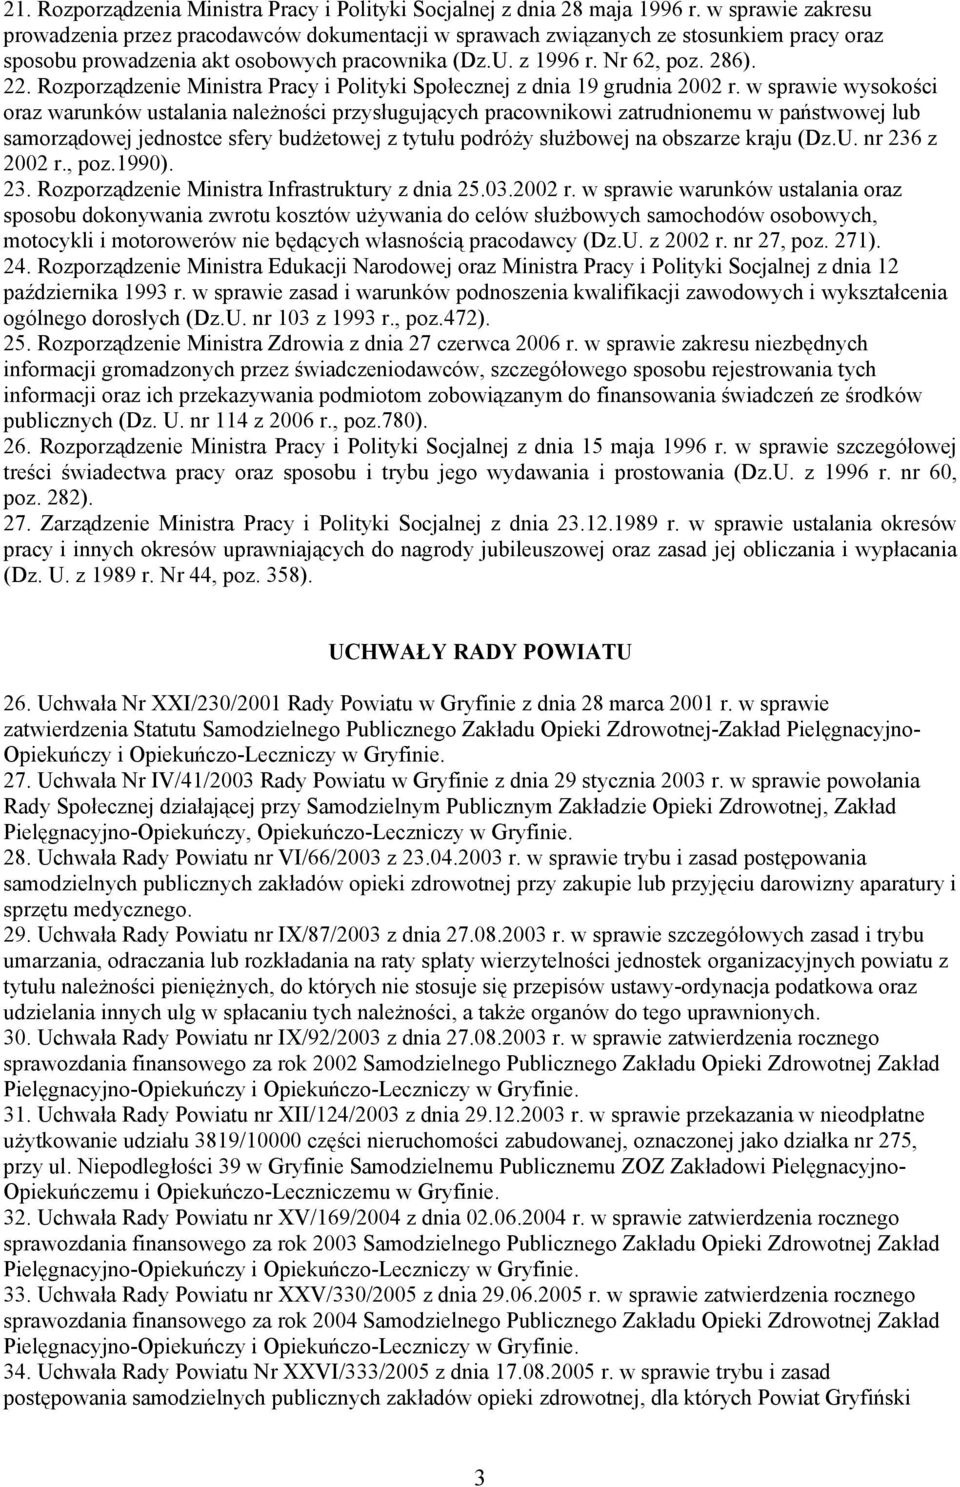 Rozporządzenie Ministra Pracy i Polityki Społecznej z dnia 19 grudnia 2002 r.